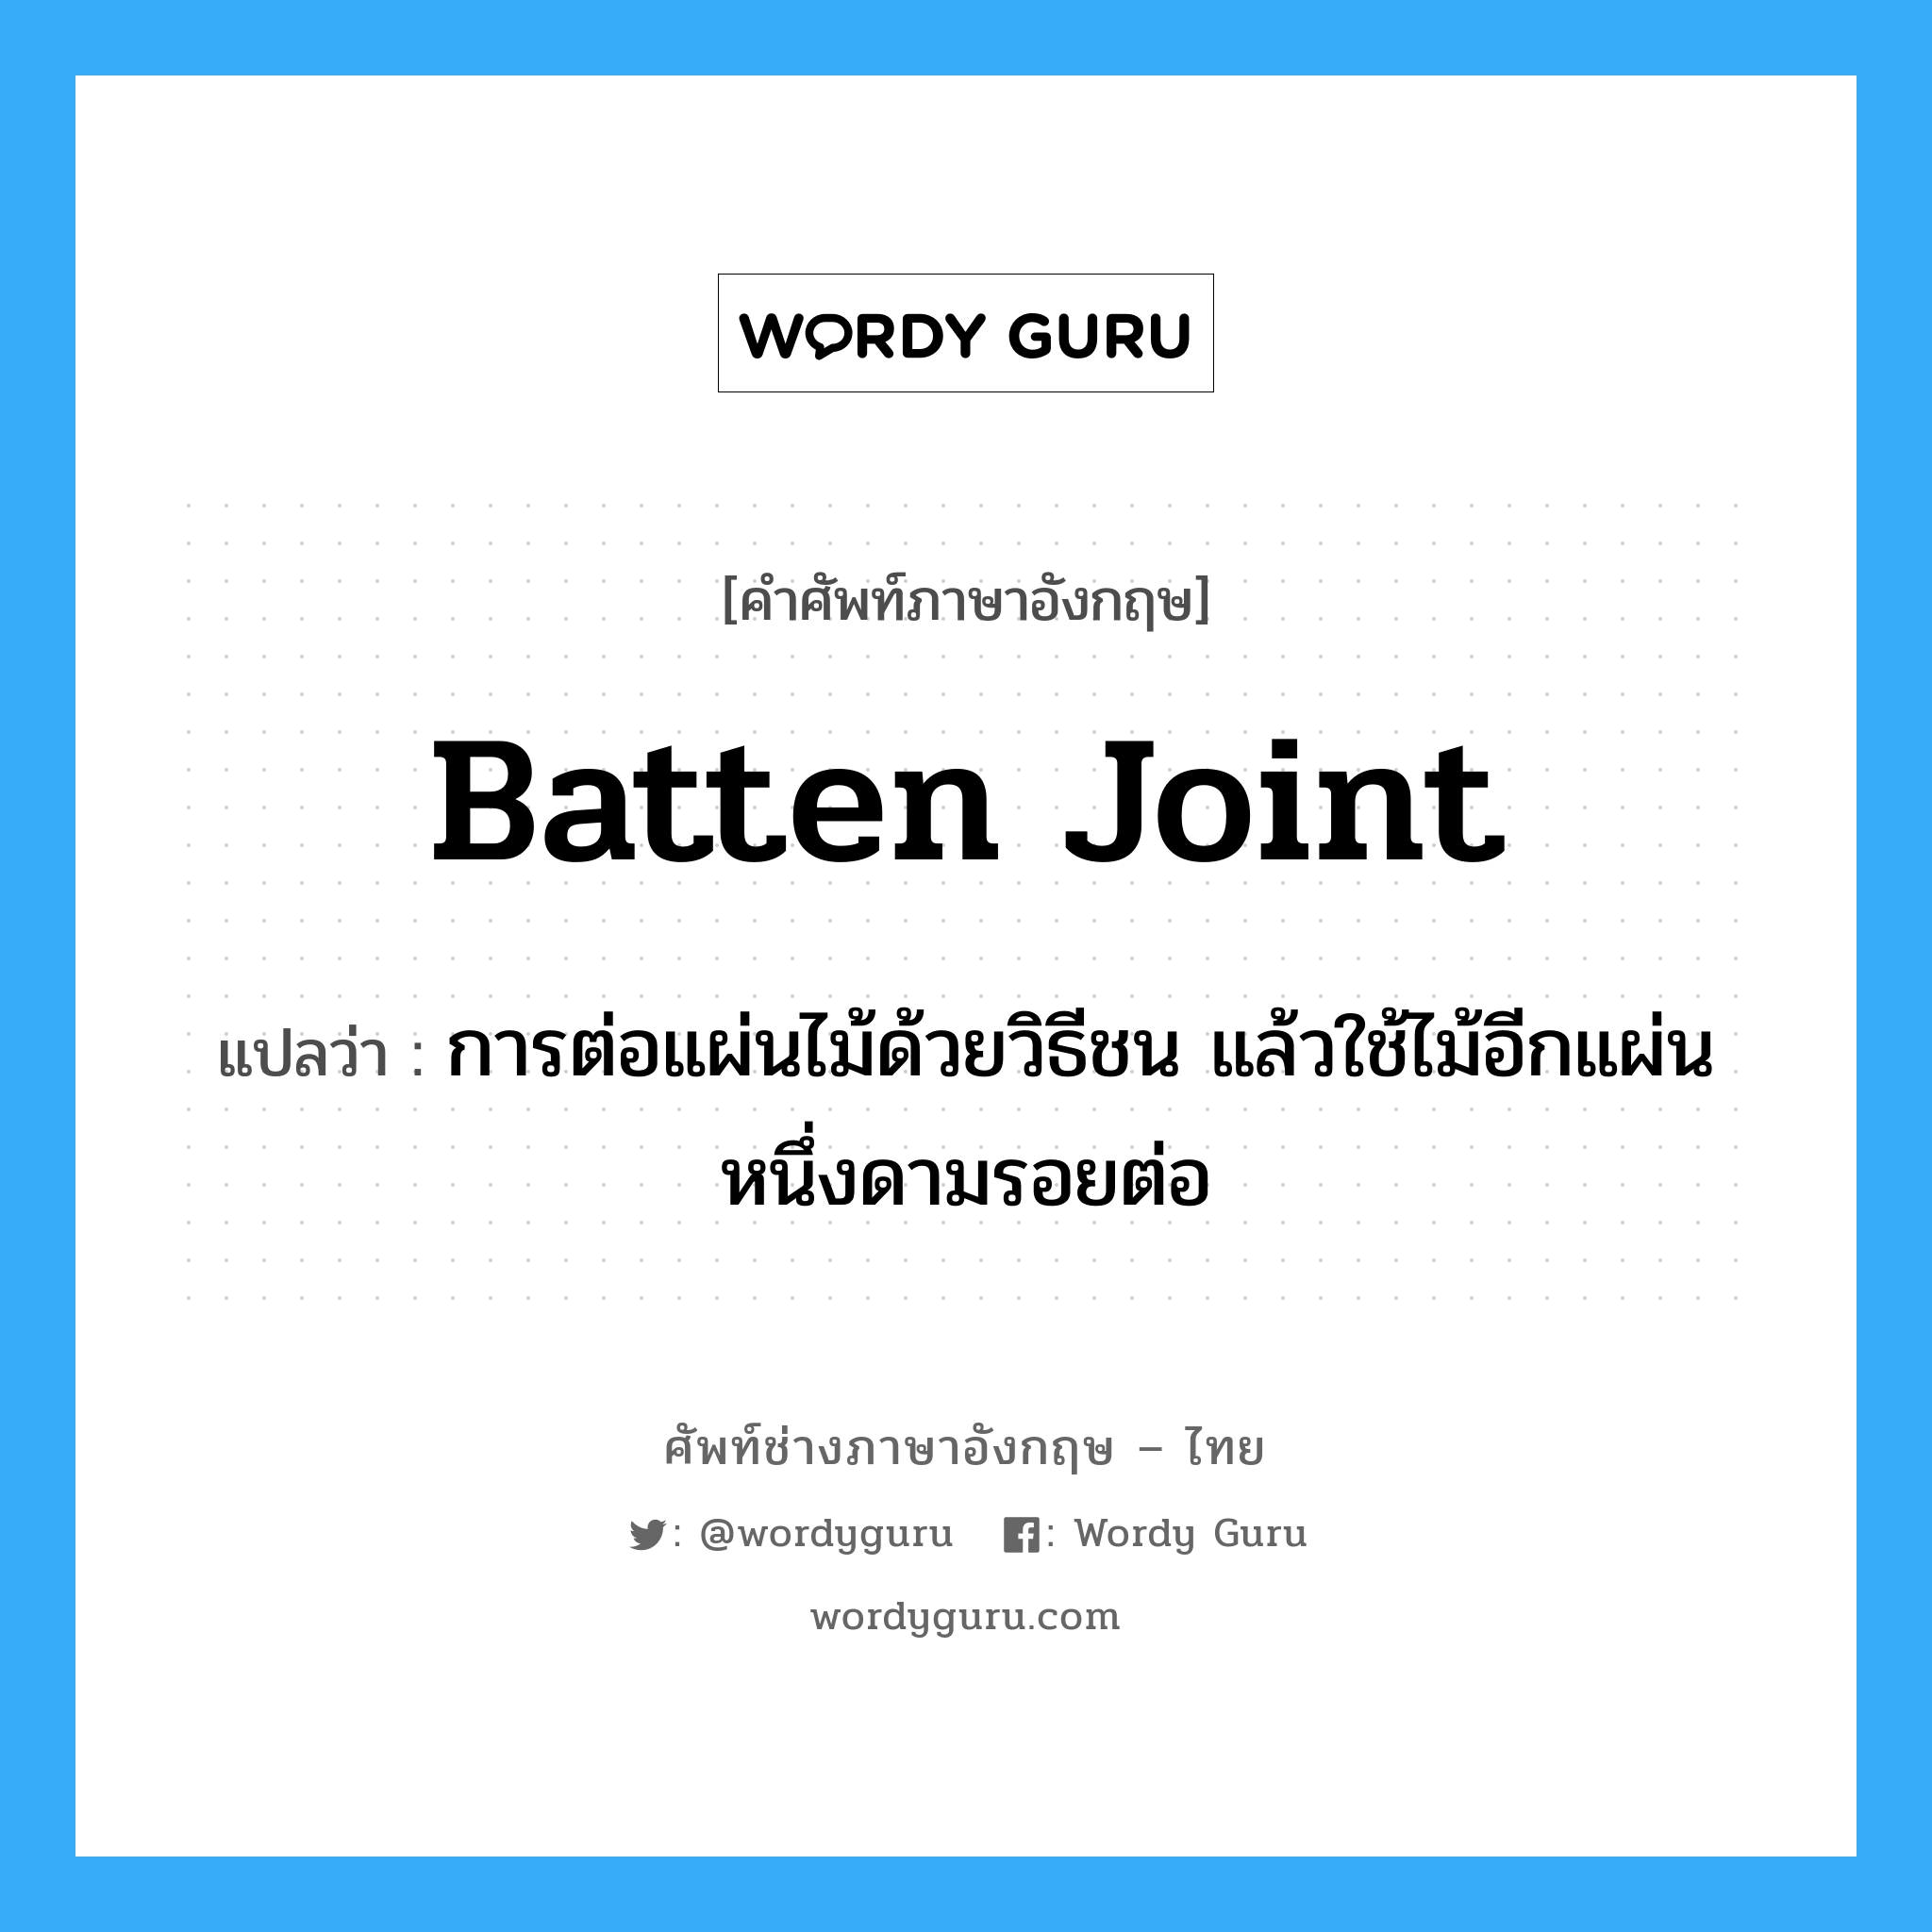 batten joint แปลว่า?, คำศัพท์ช่างภาษาอังกฤษ - ไทย batten joint คำศัพท์ภาษาอังกฤษ batten joint แปลว่า การต่อแผ่นไม้ด้วยวิธีชน แล้วใช้ไม้อีกแผ่นหนึ่งดามรอยต่อ